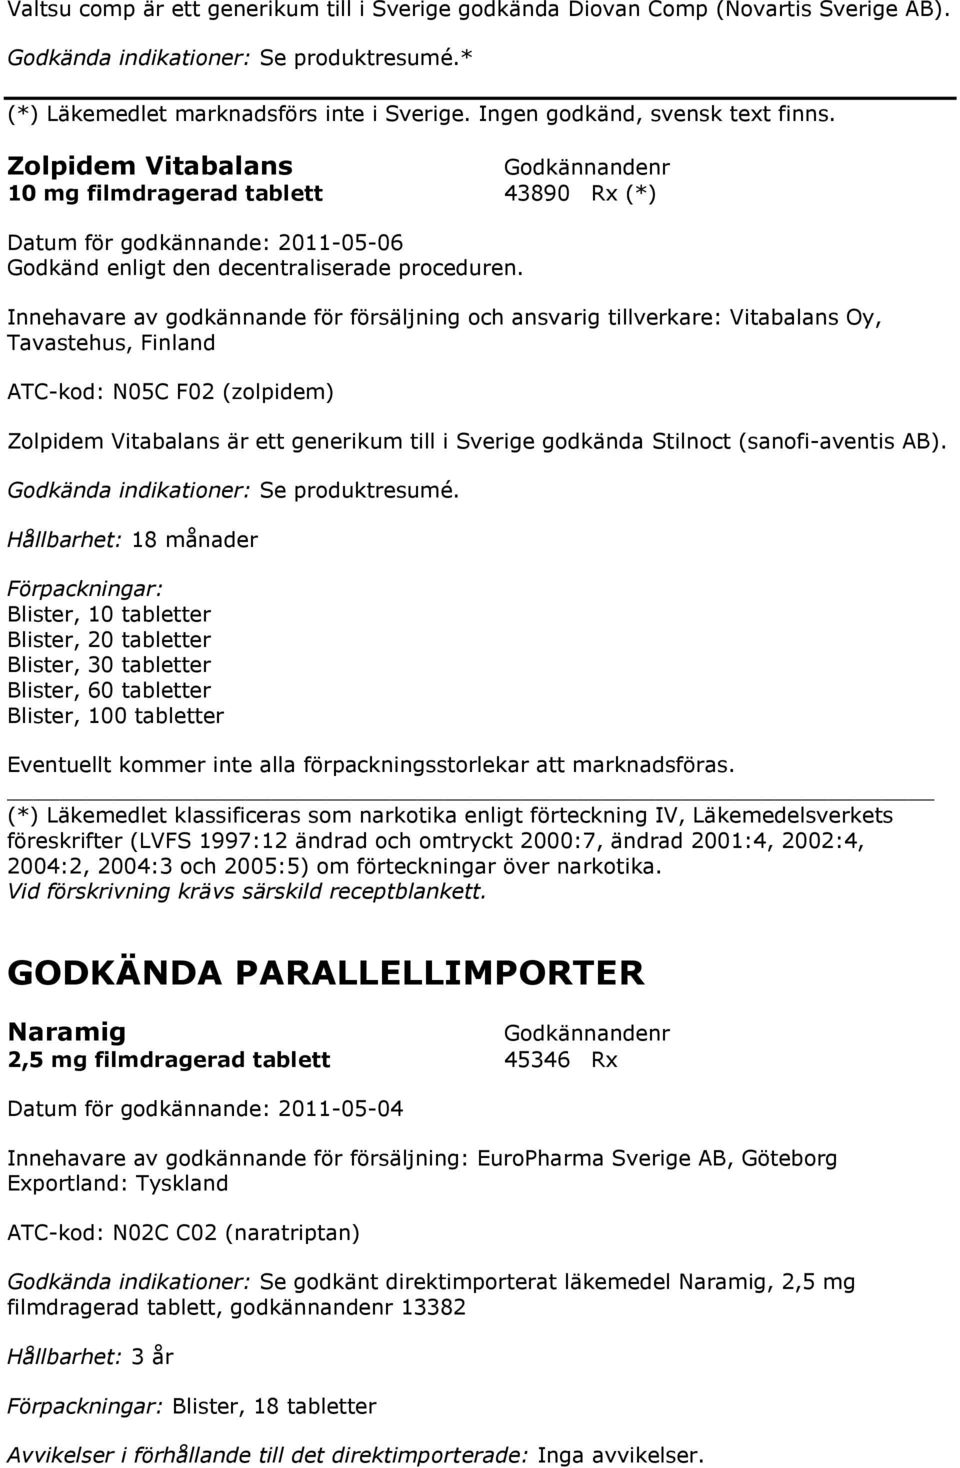 Zolpidem Vitabalans är ett generikum till i Sverige godkända Stilnoct (sanofi-aventis AB).